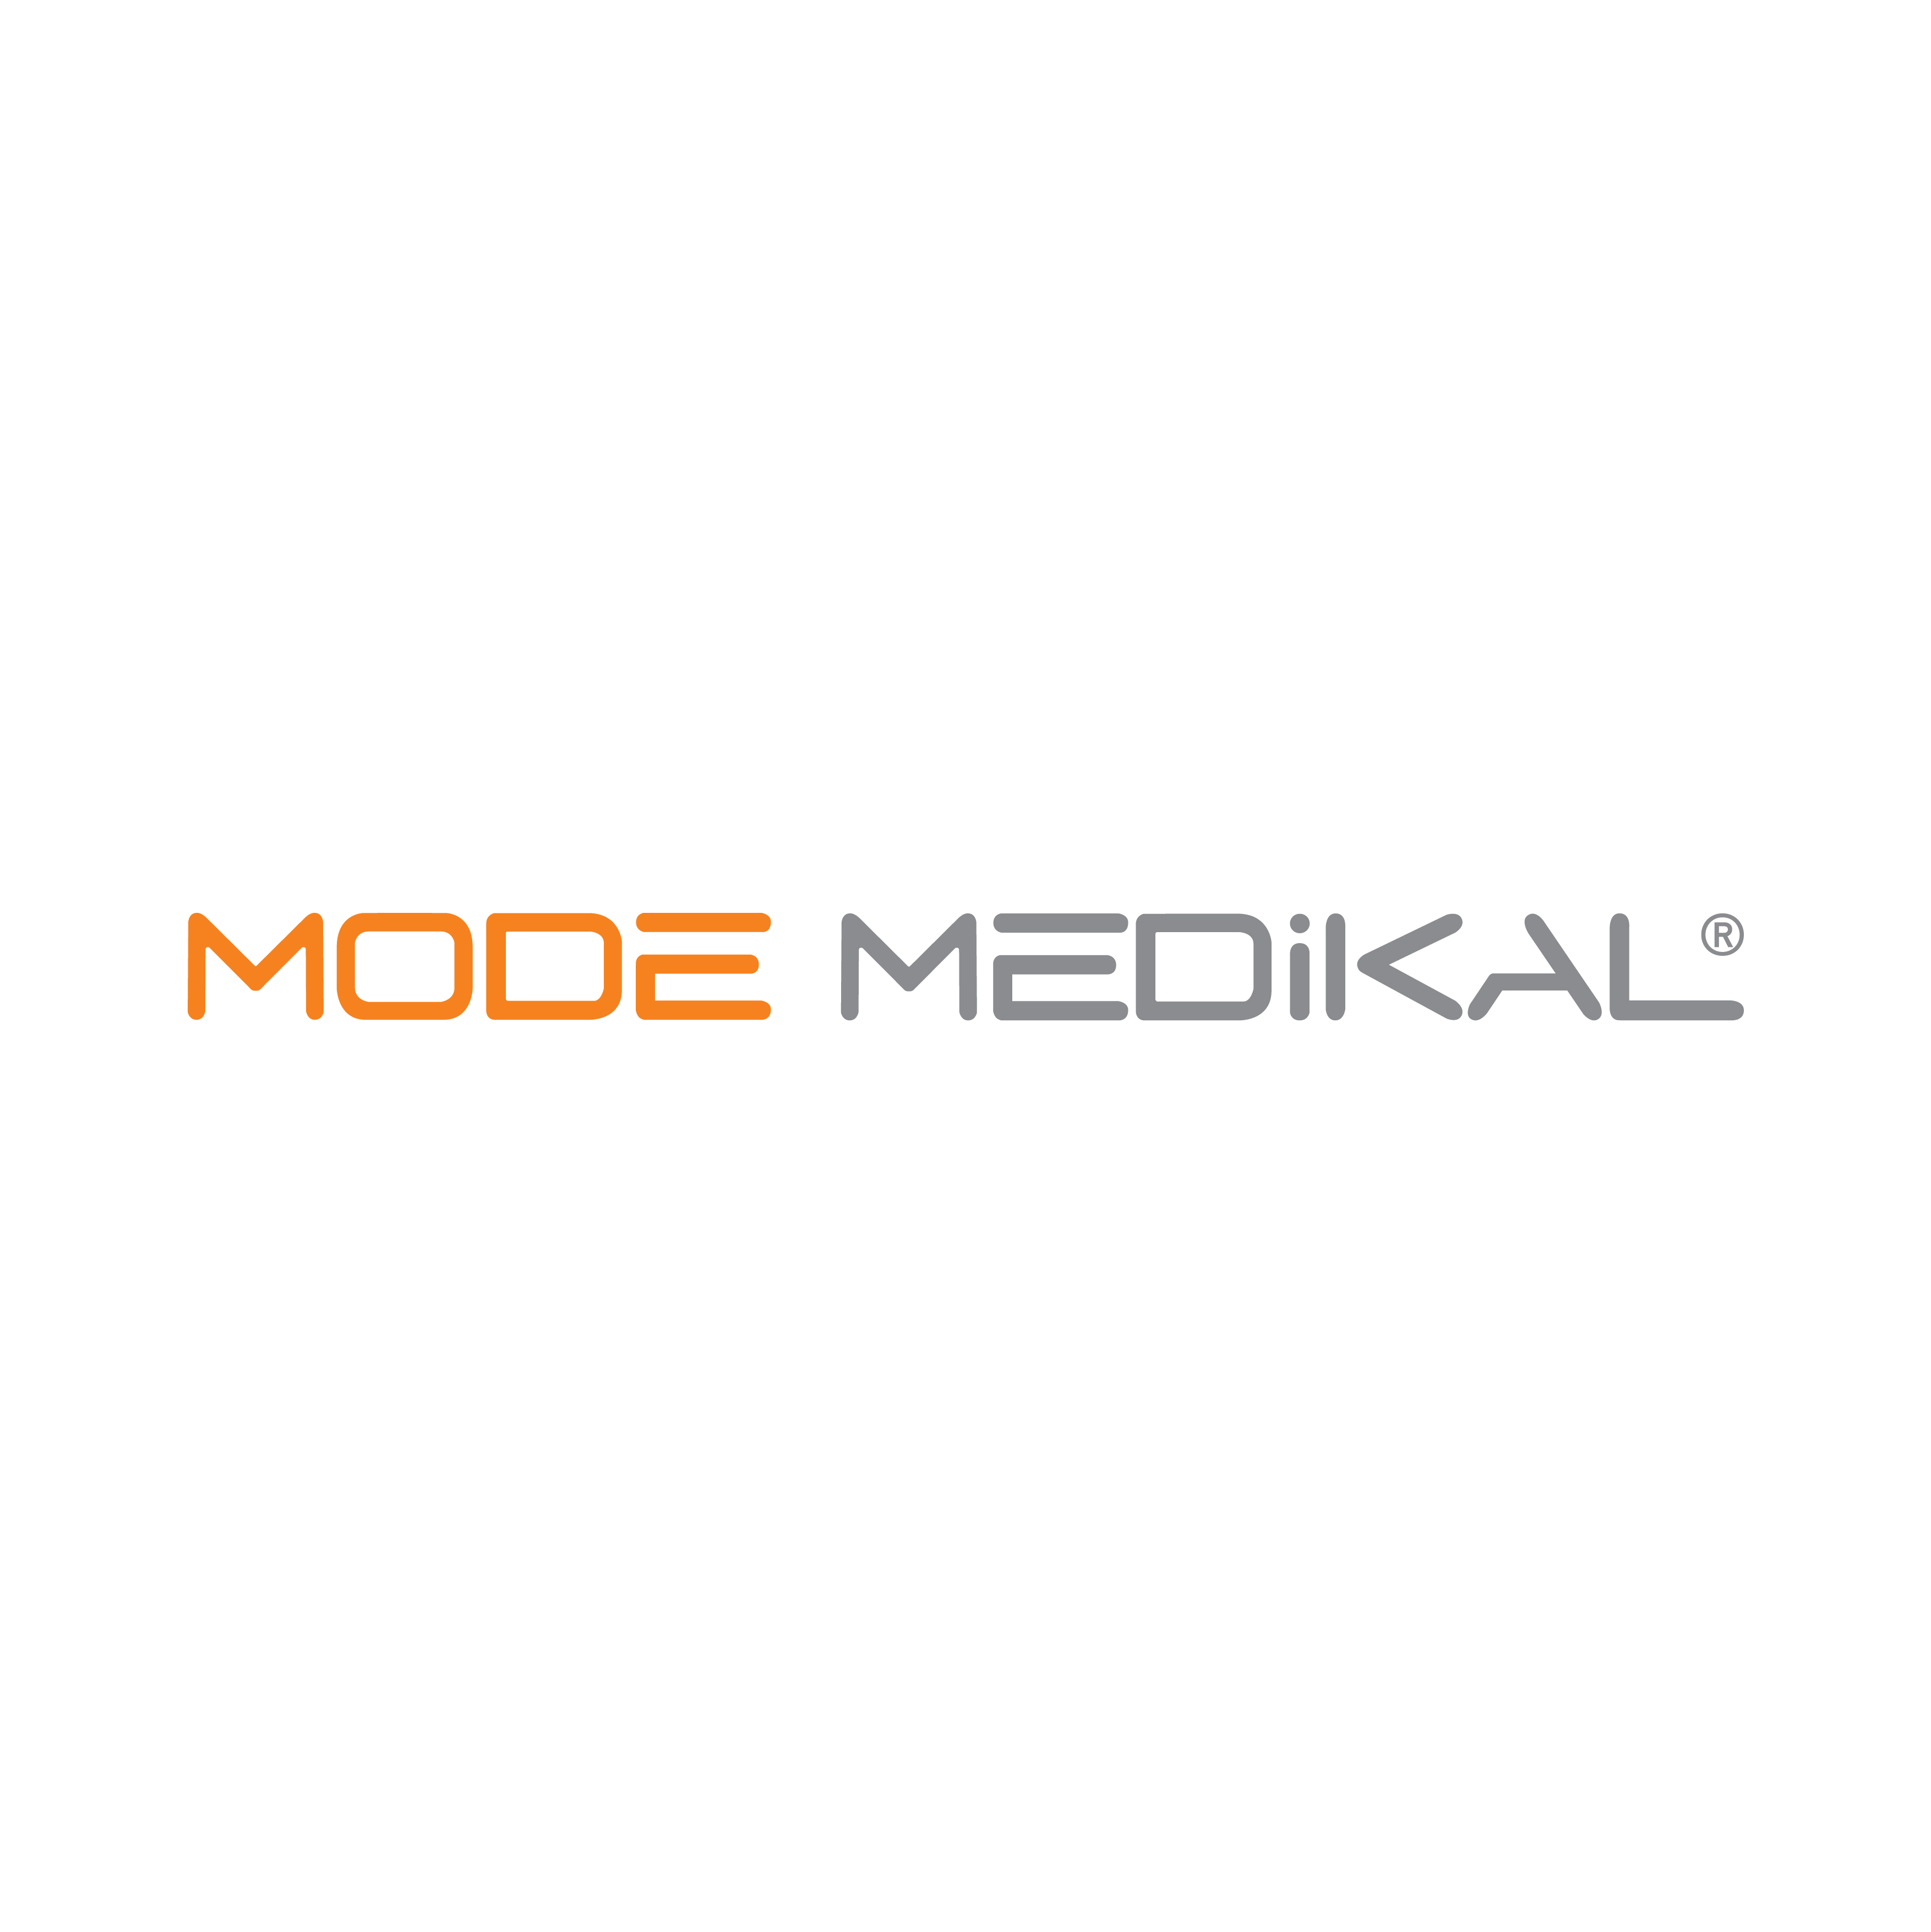 Mode Medikal Logo